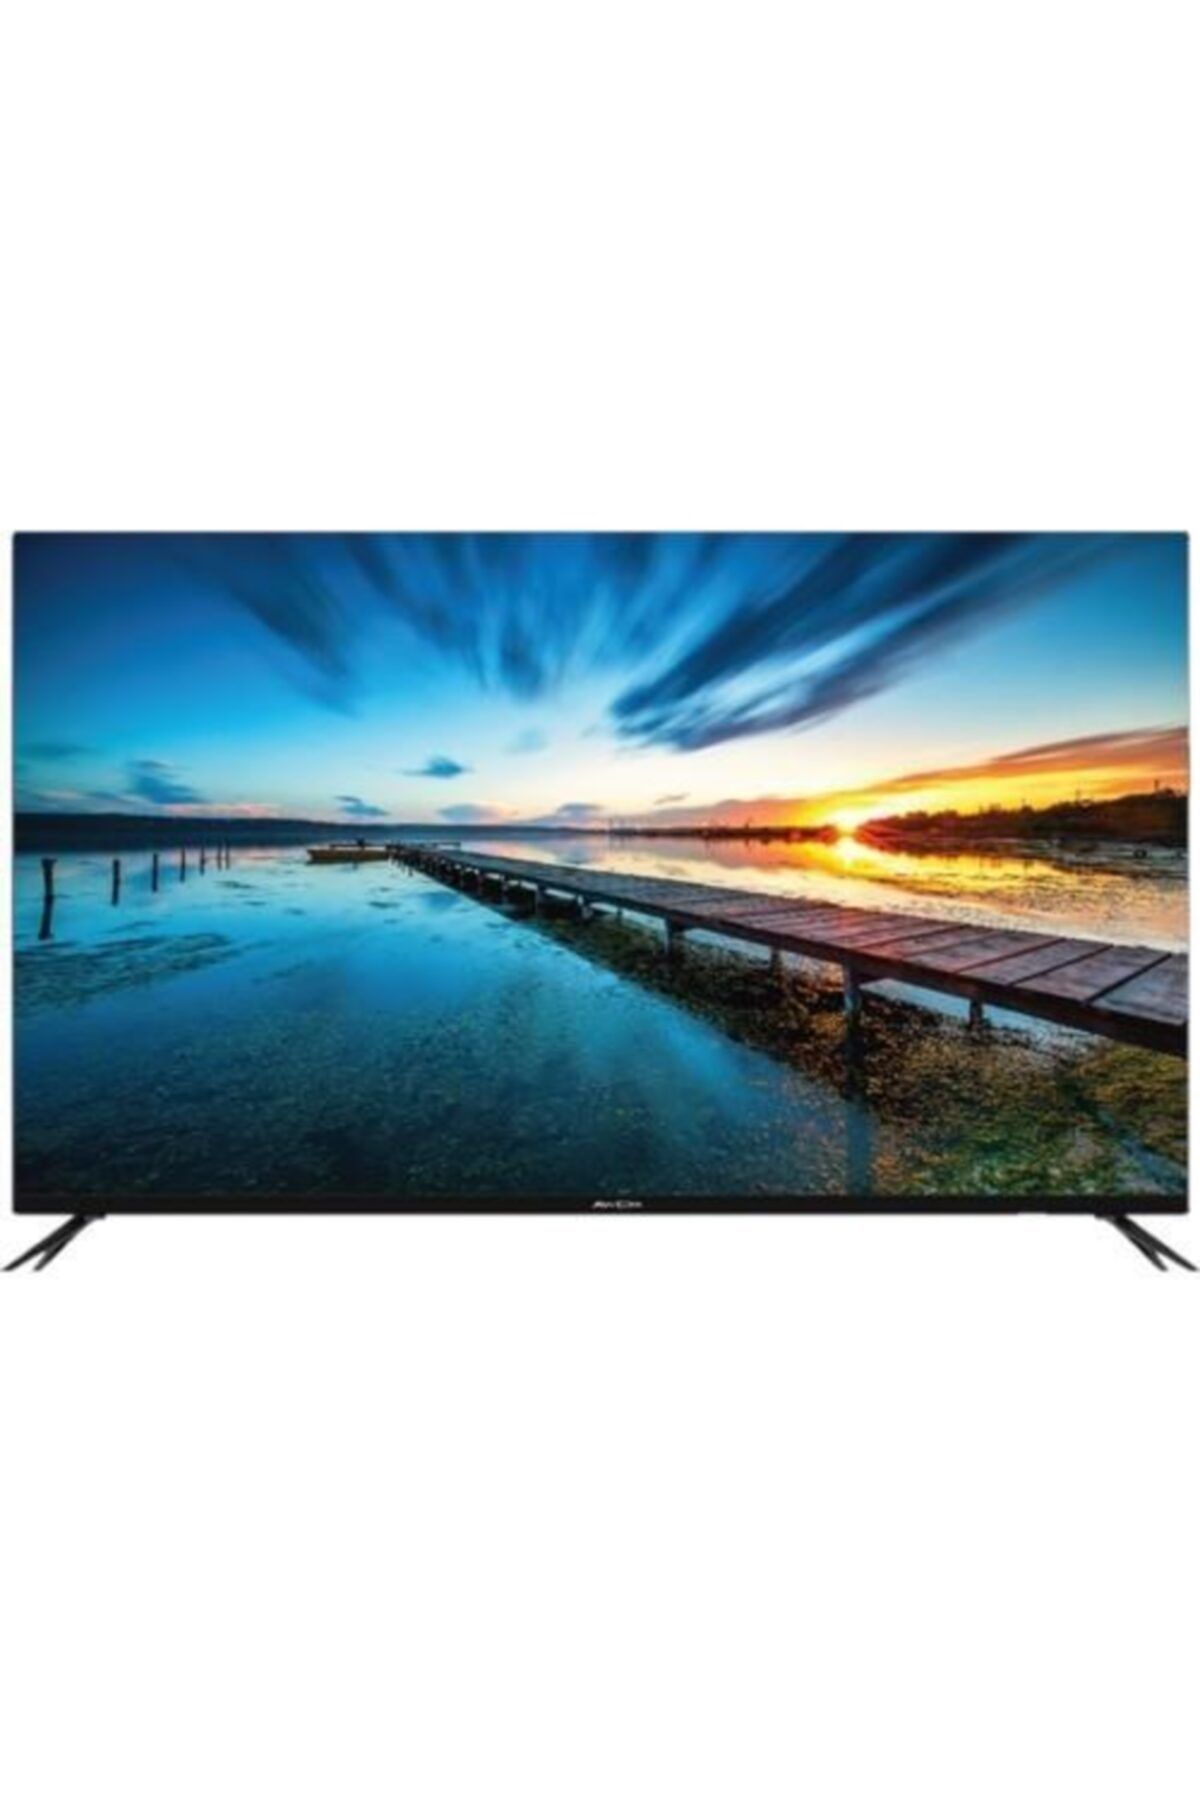 AWOX U5100STR 50" 127 Ekran Uydu Alıcılı 4K Ultra HD Smart DLED TV